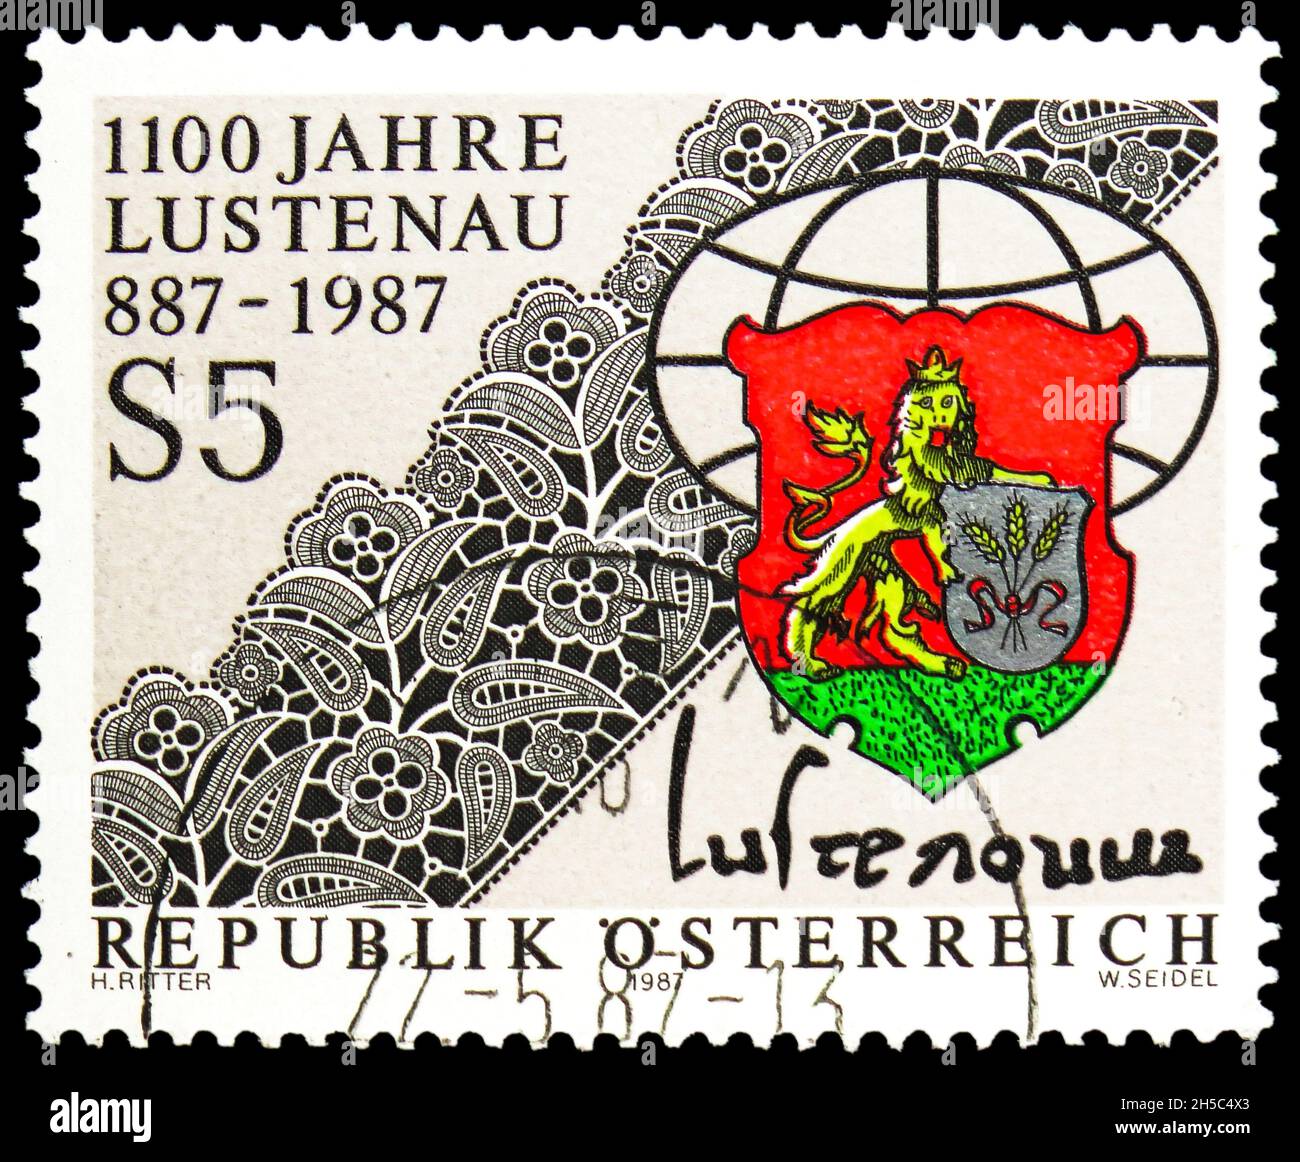 MOSCOU, RUSSIE - 24 OCTOBRE 2021: Timbre-poste imprimé en Autriche consacré à 1100 ans Lutenau (Vorarlberg), vers 1987 Banque D'Images